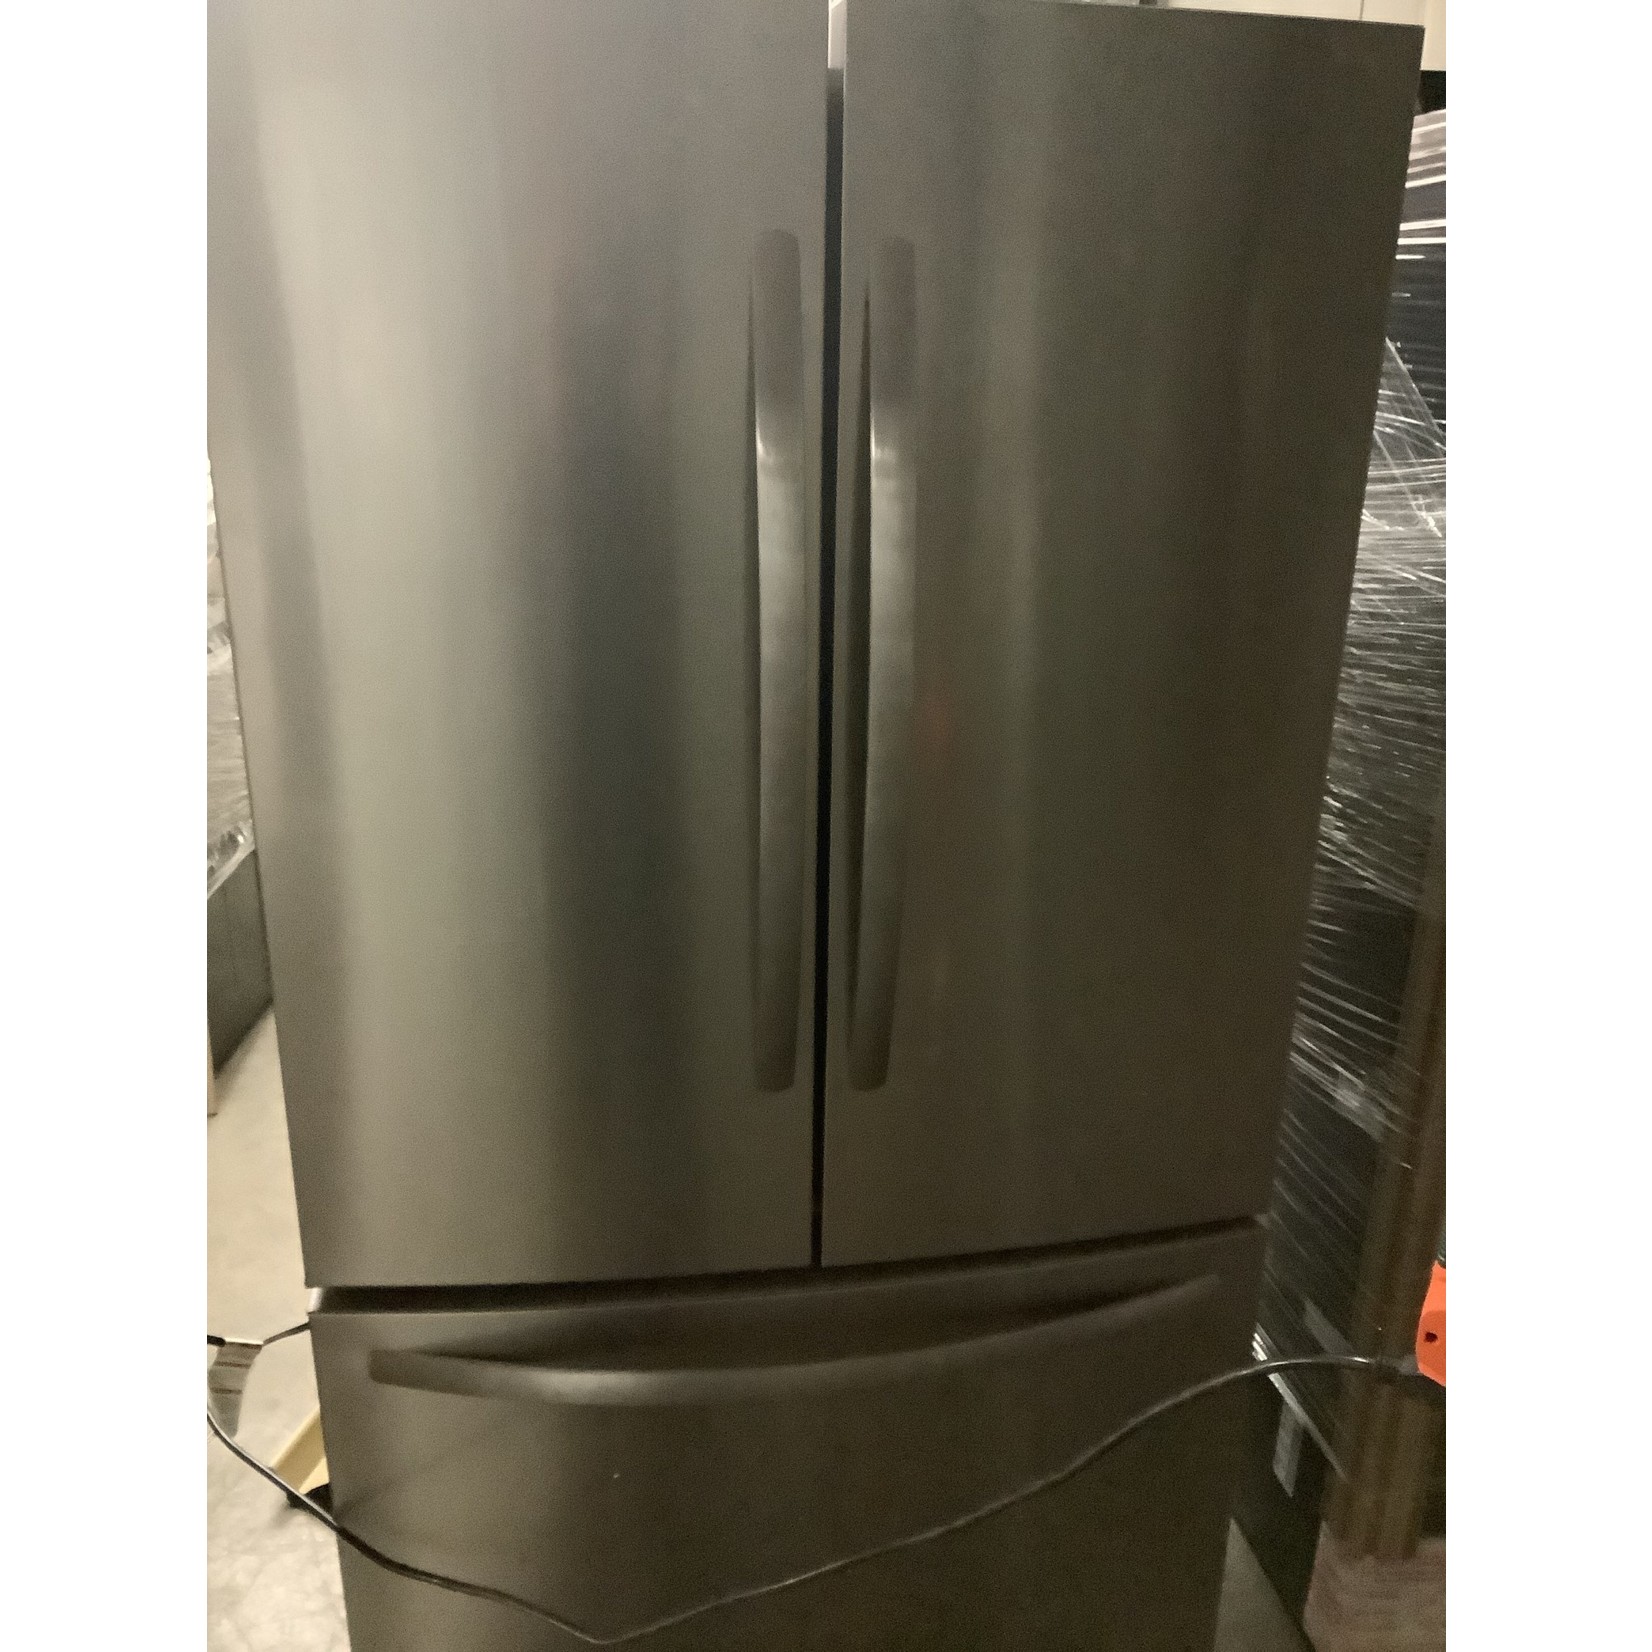 FRIGIDAIRE Refrigerator